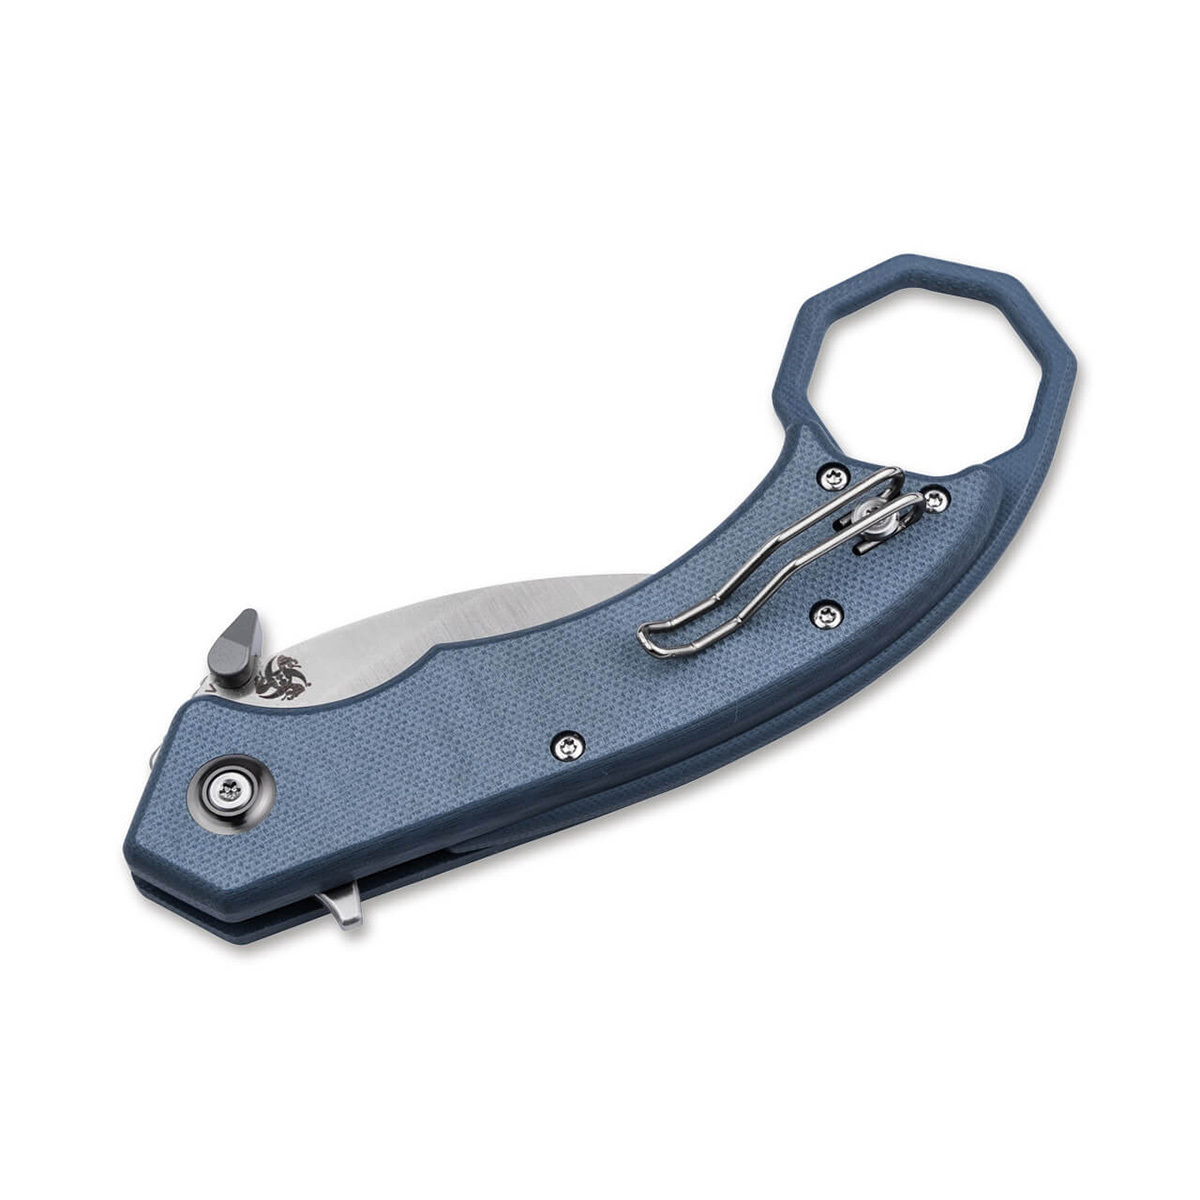 Складной нож Boker HEL Karambit, сталь 154CM, рукоять G10, blue/grey - фото 2